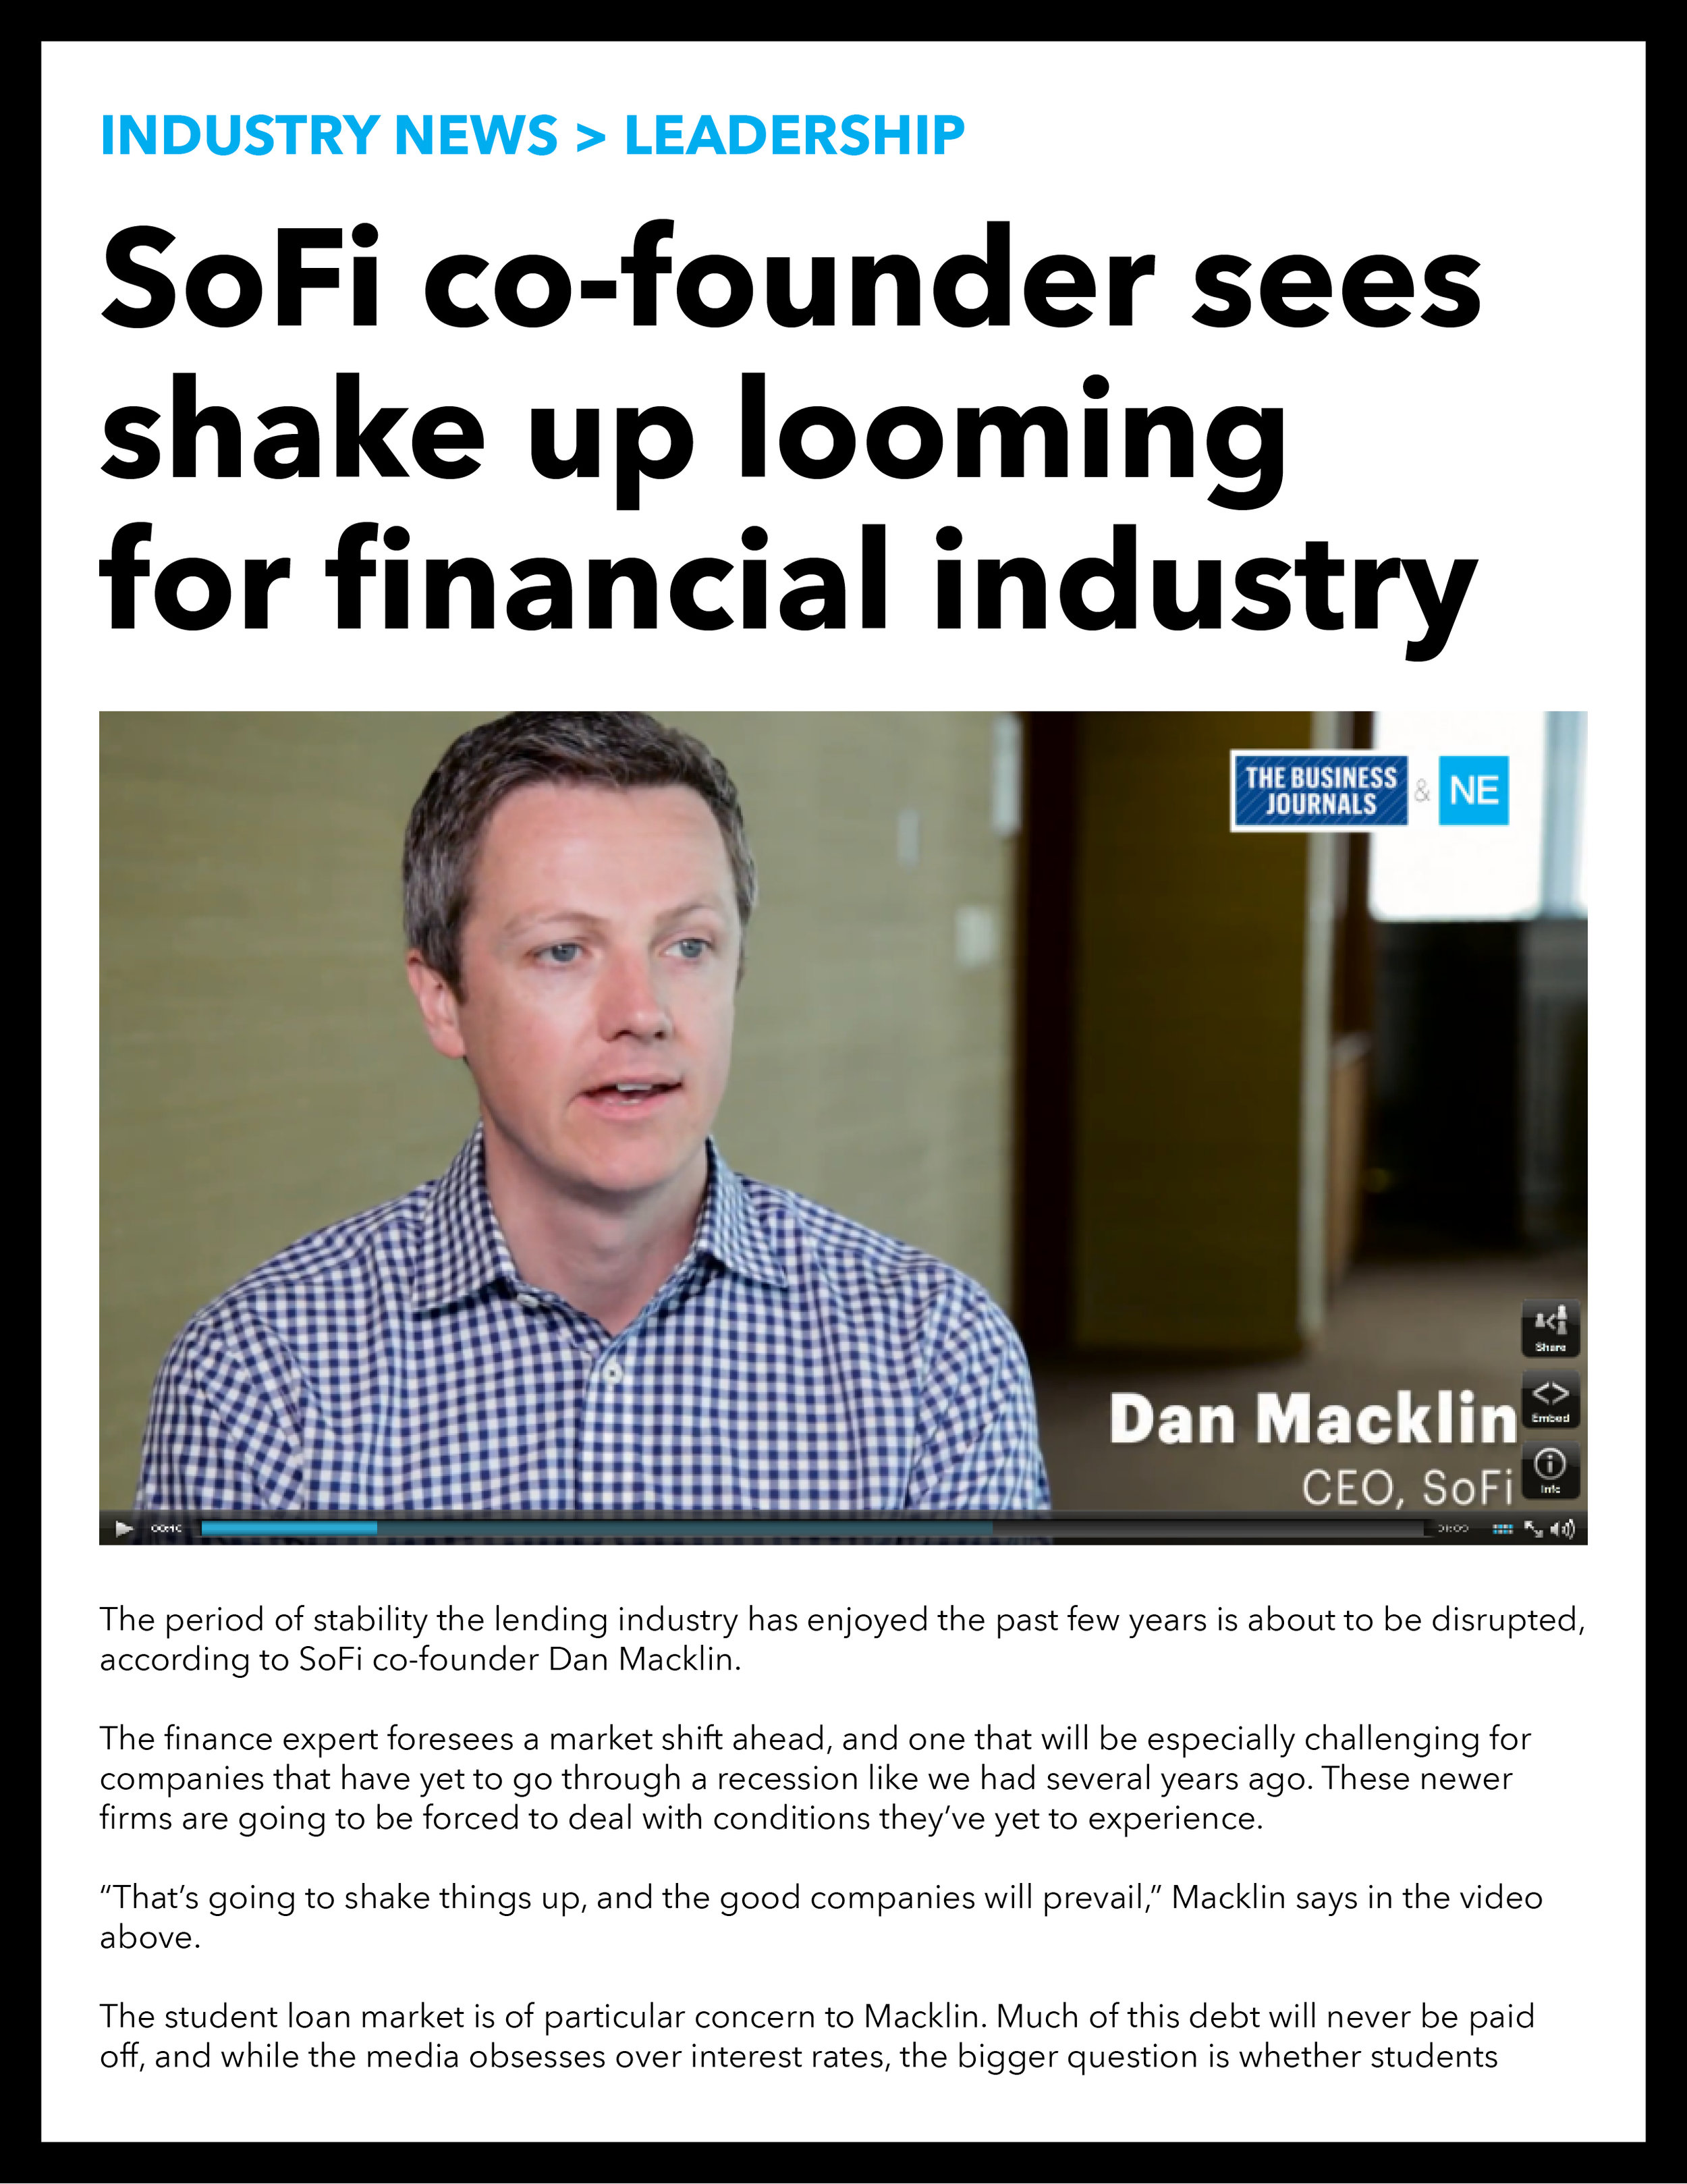 Dan Macklin, CEO of SoFi